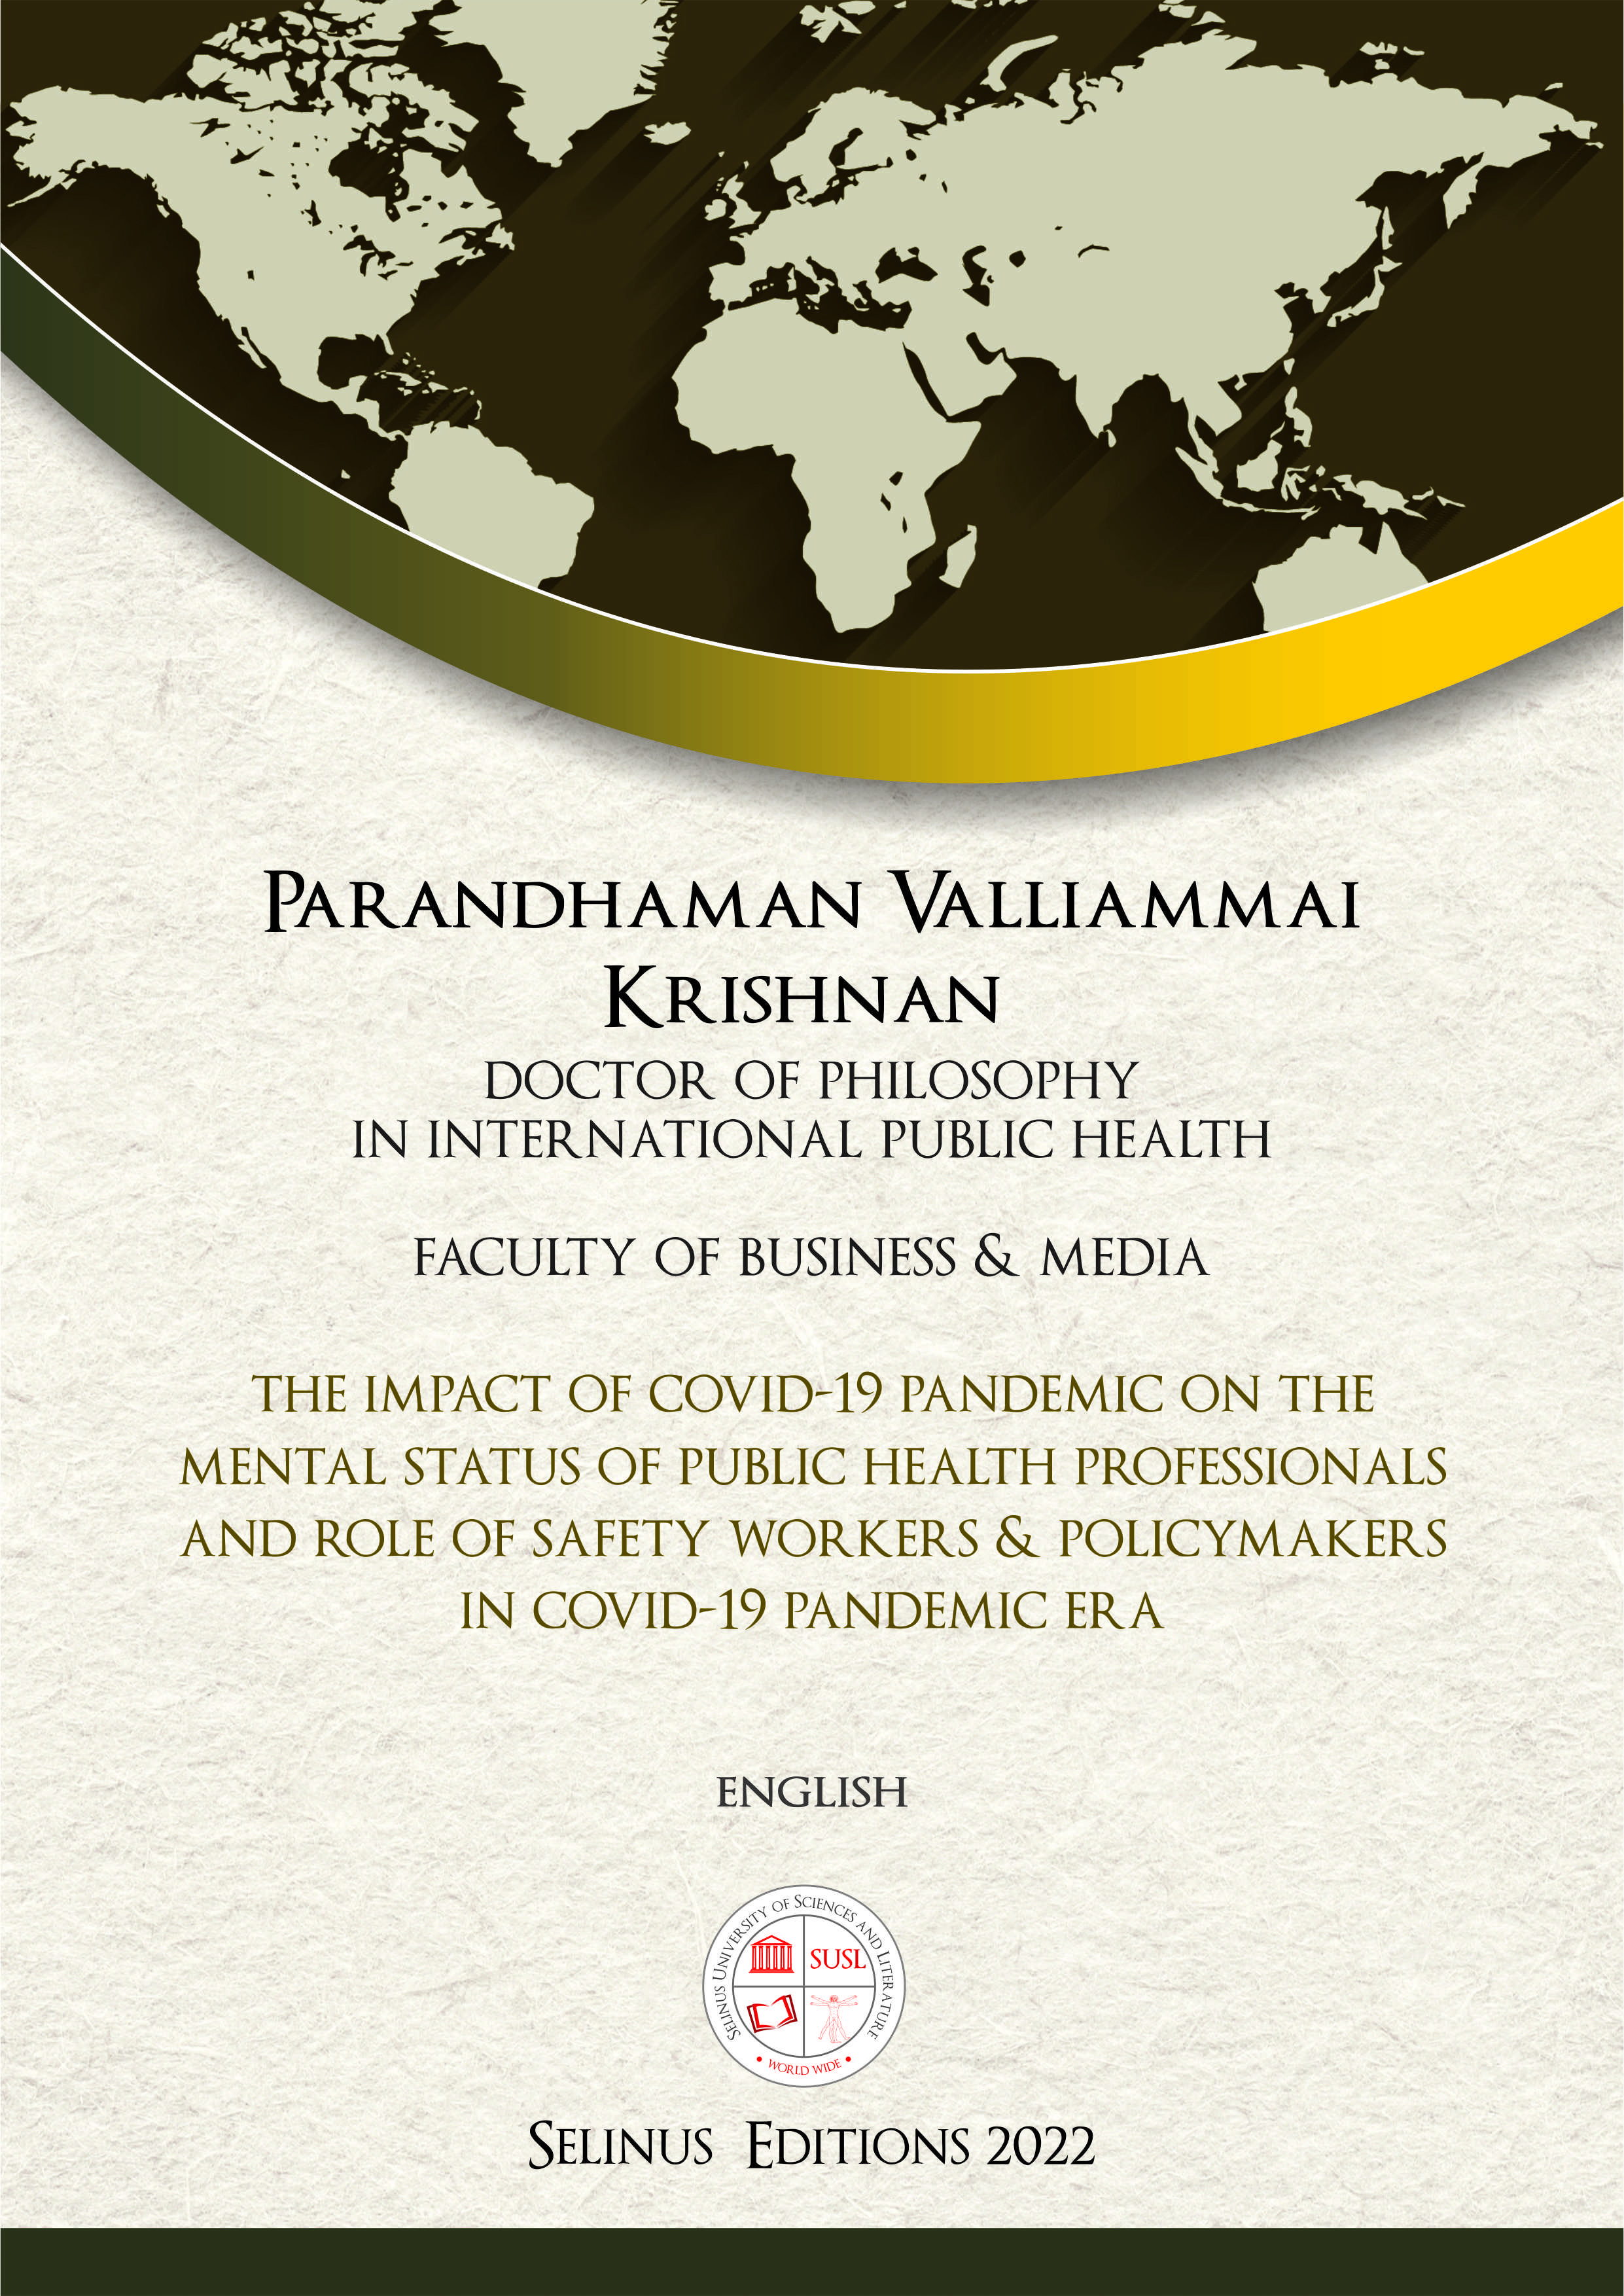 Thesis Parandhaman Krishnan